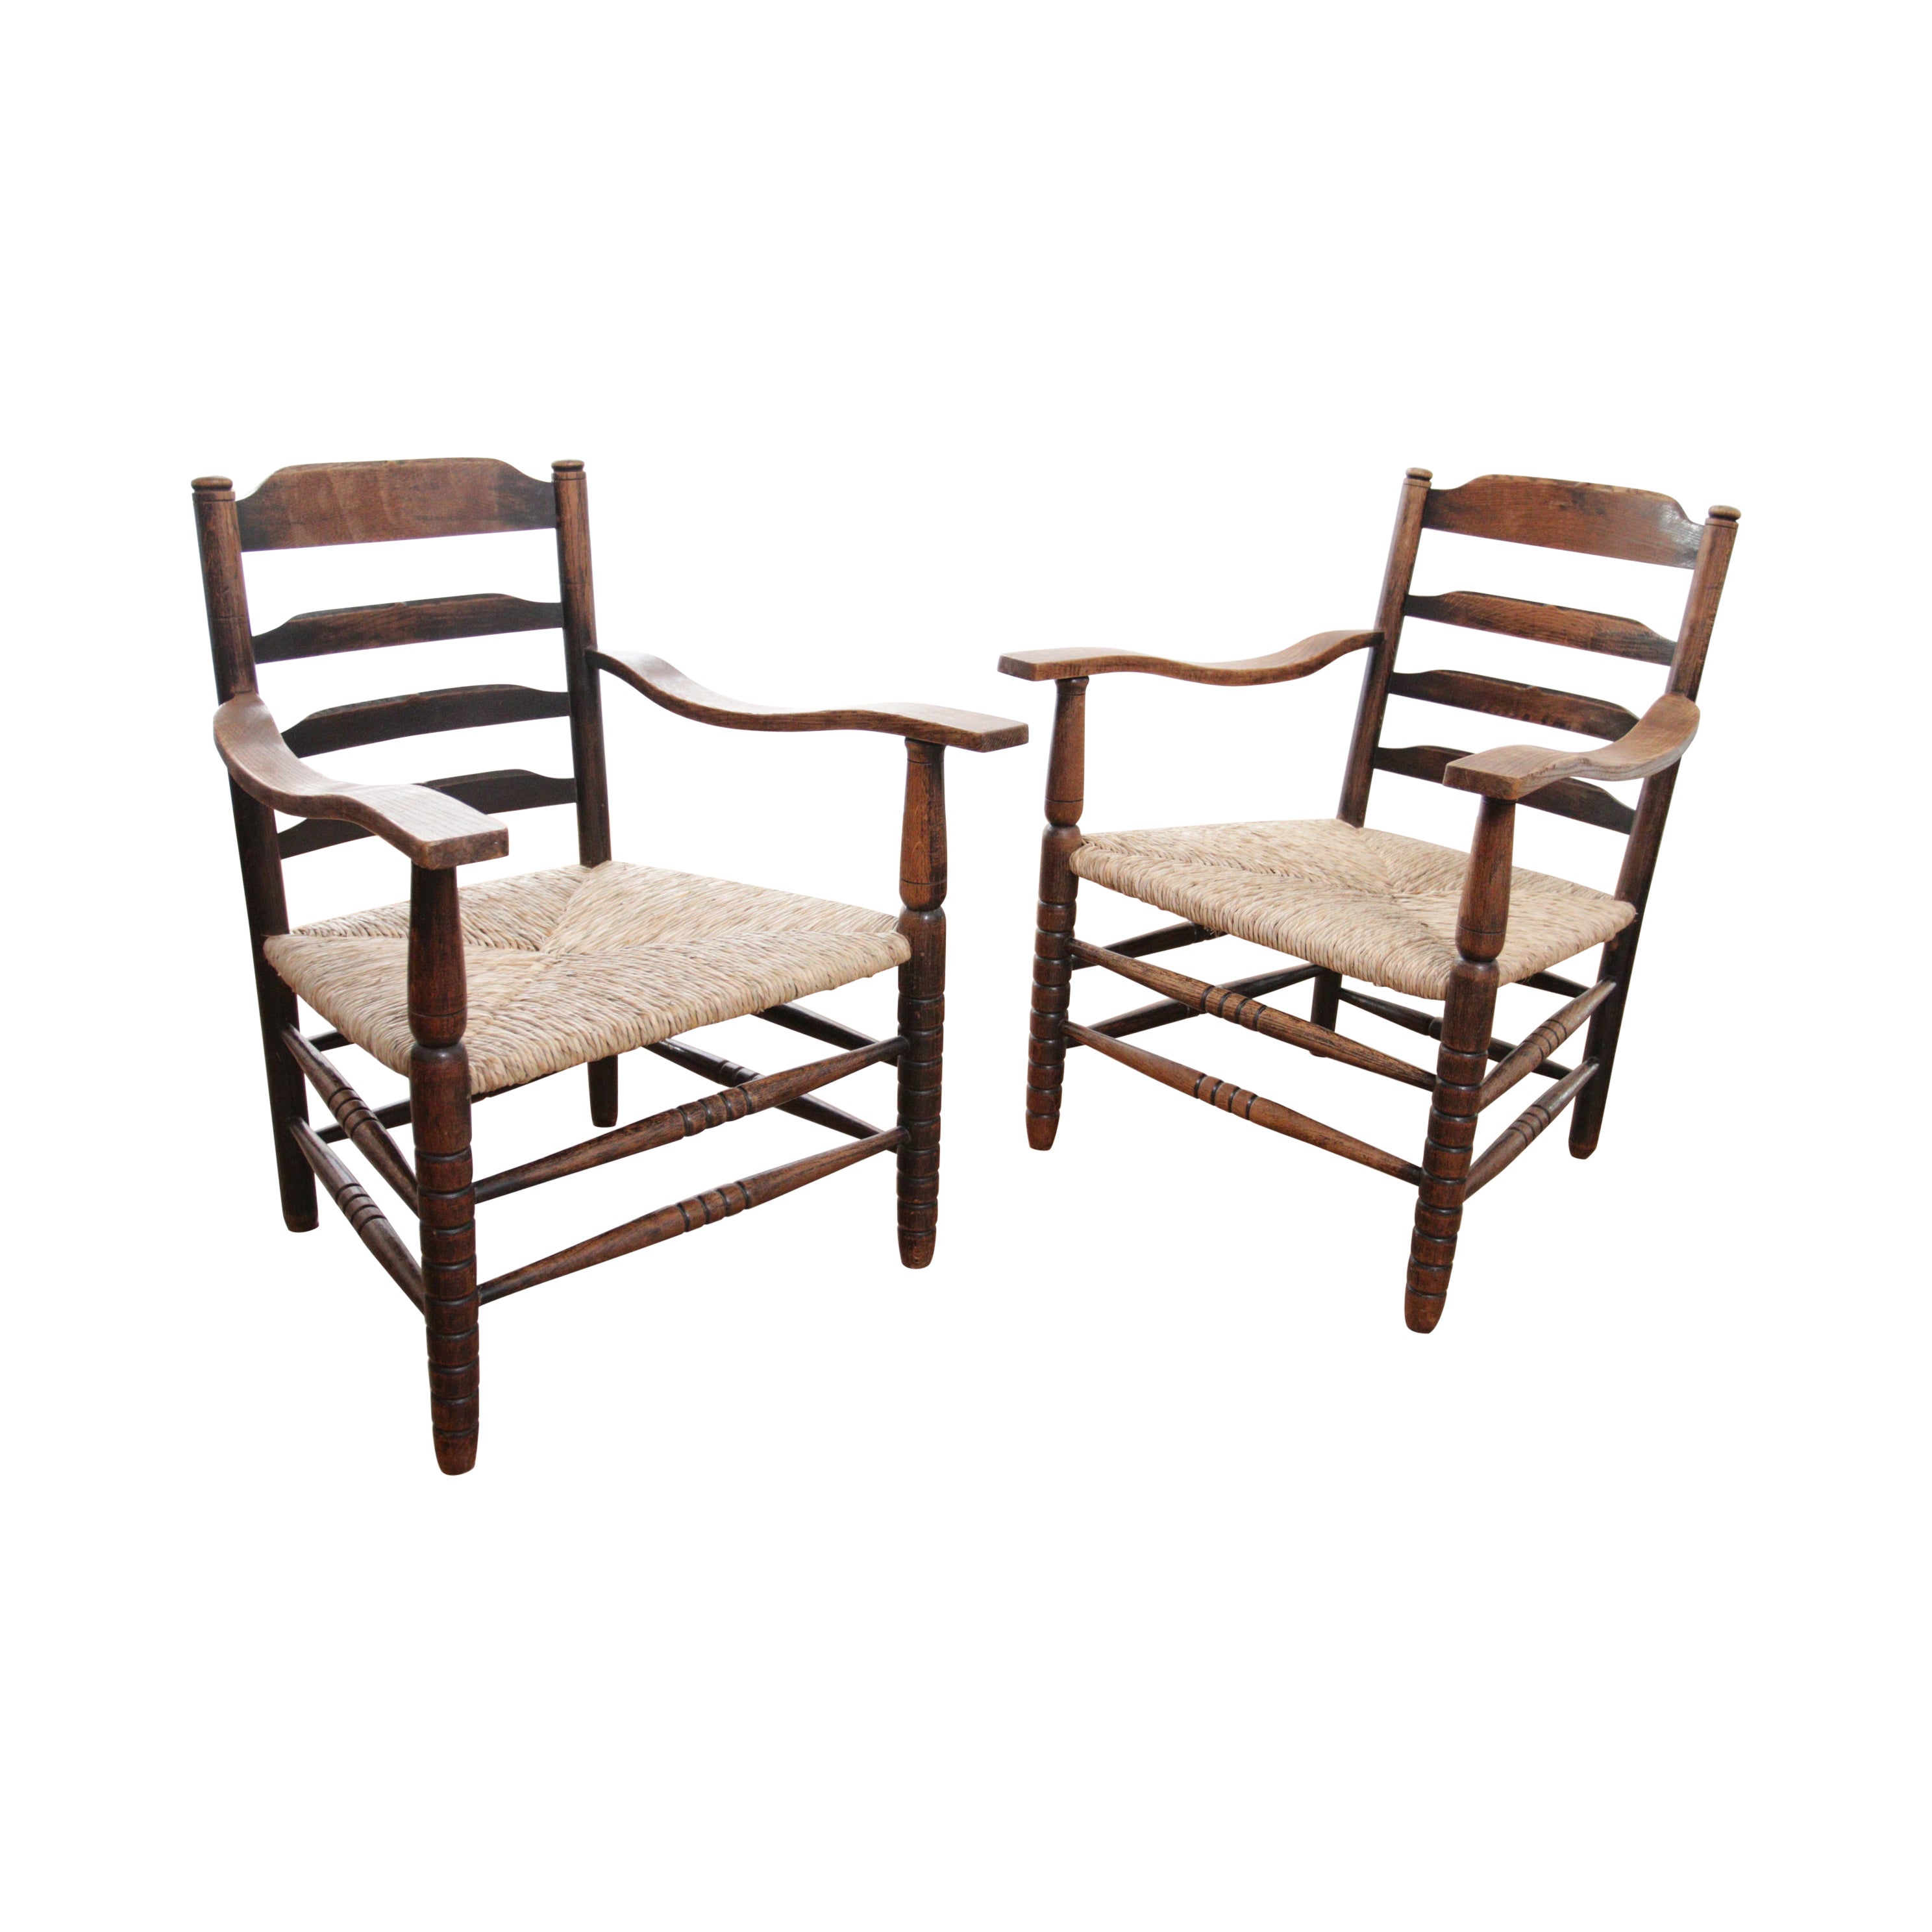 Deux charmants fauteuils ruraux hollandais à dossier en échelle en Oak Oak Rush Seat, 1920